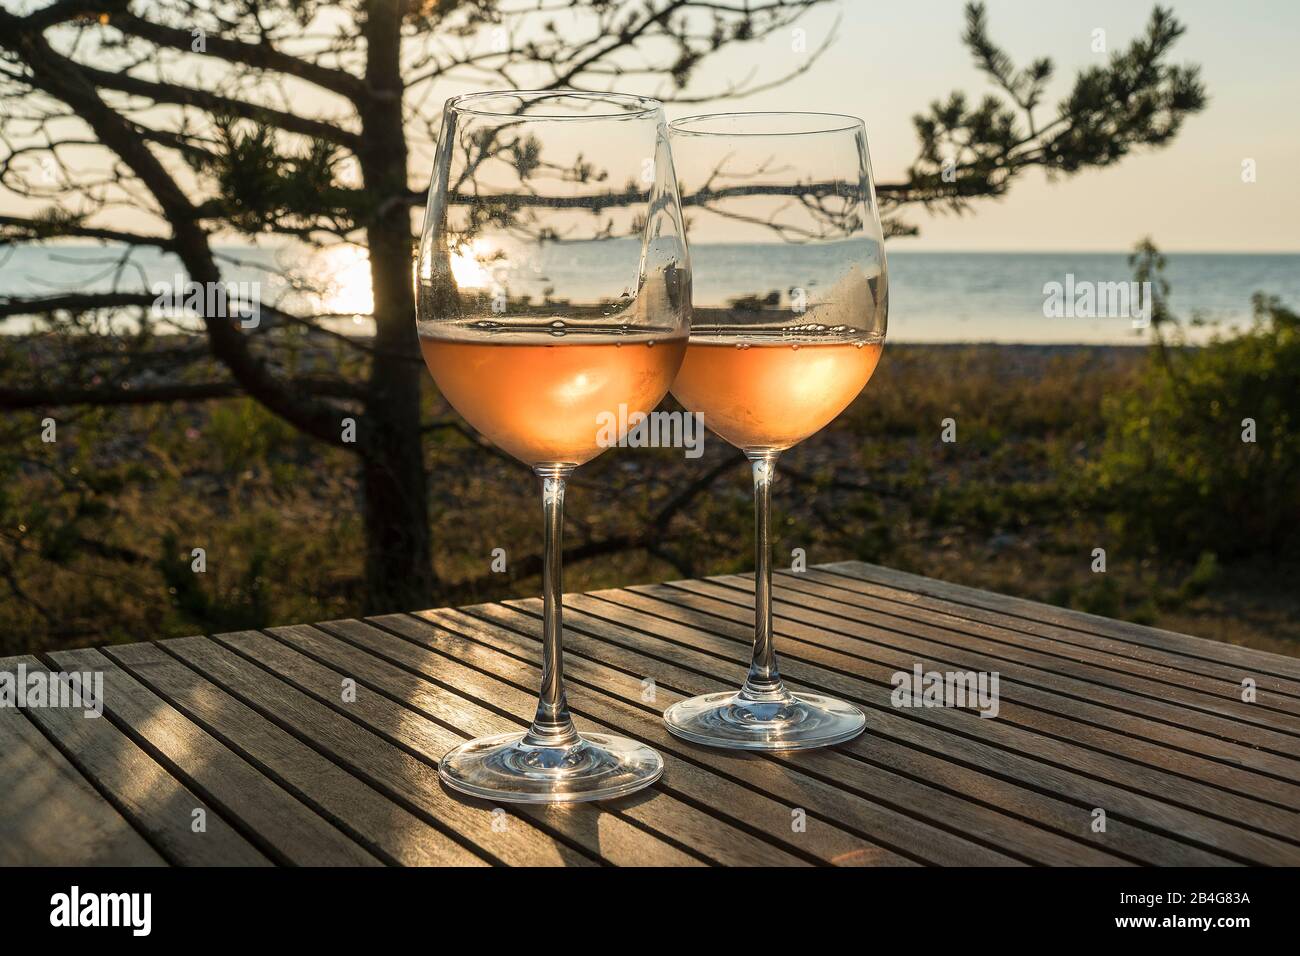 Estland, Ostseeinsel Hiiumaa, Küste, zwei Weingläser mit Roséwein im Abendlicht, Stilleben Stock Photo